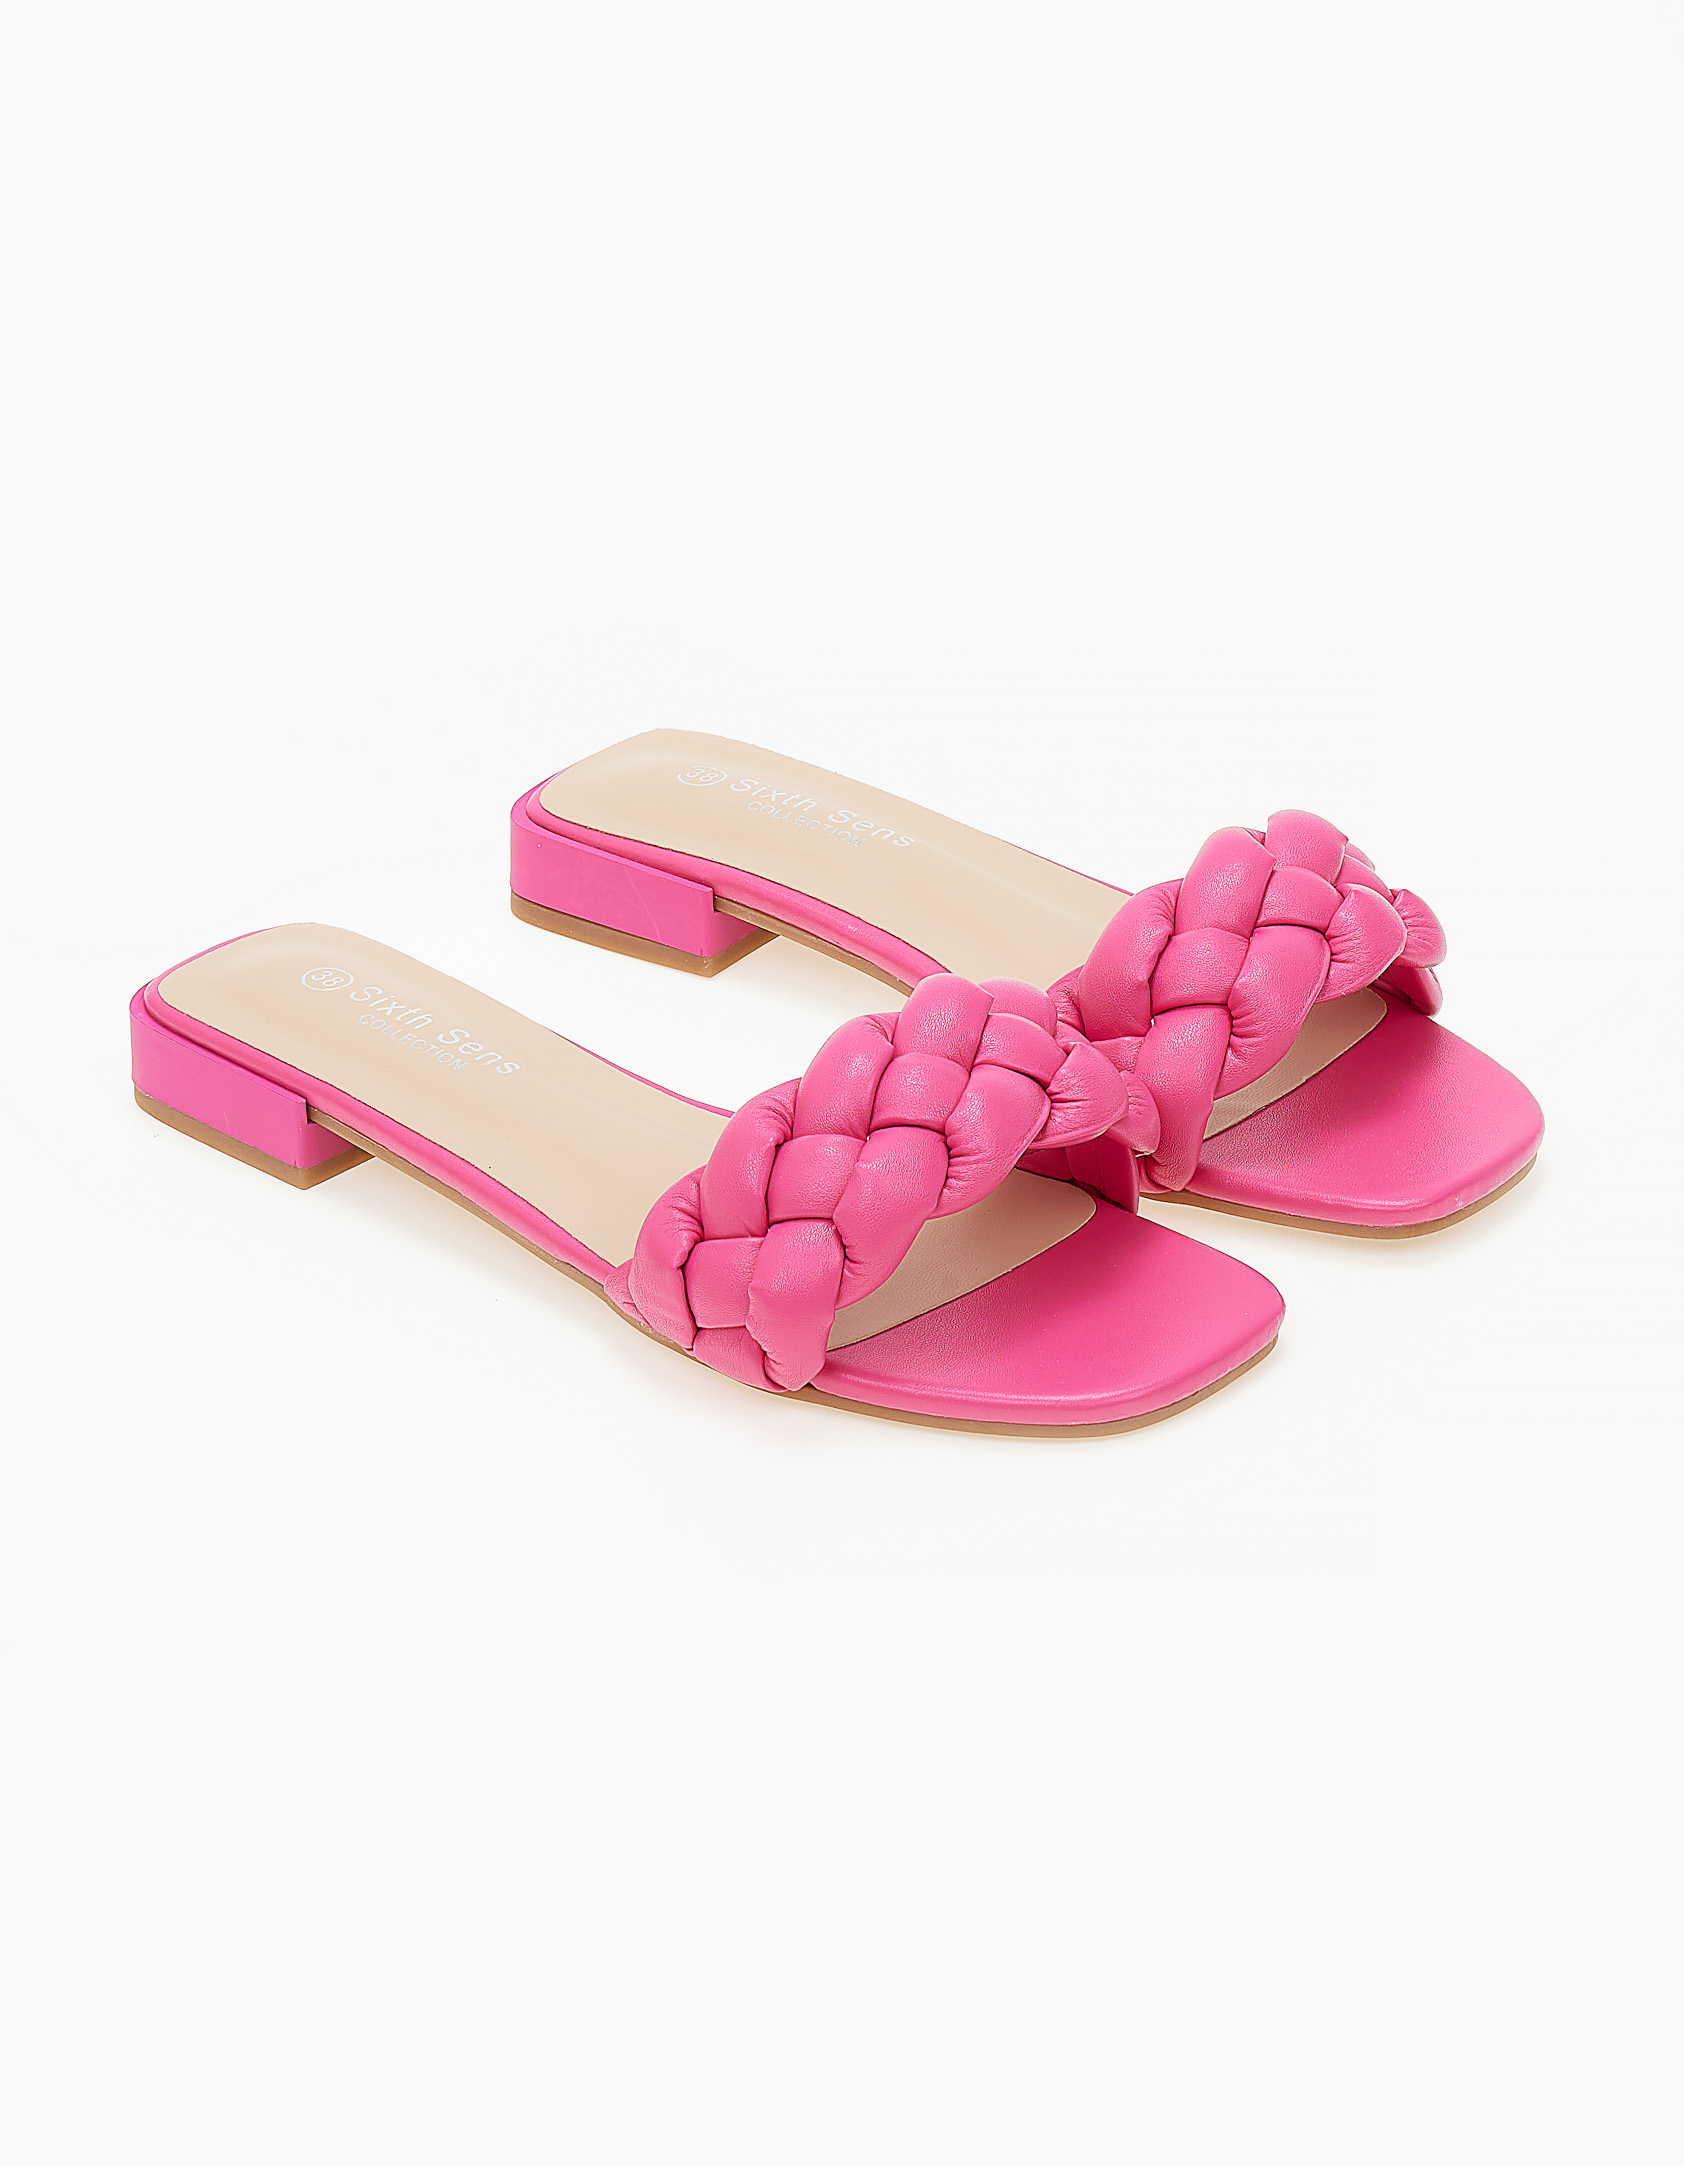 Παπούτσια > Σανδάλια Slides με bomber πλεκτή φάσα - Ροζ